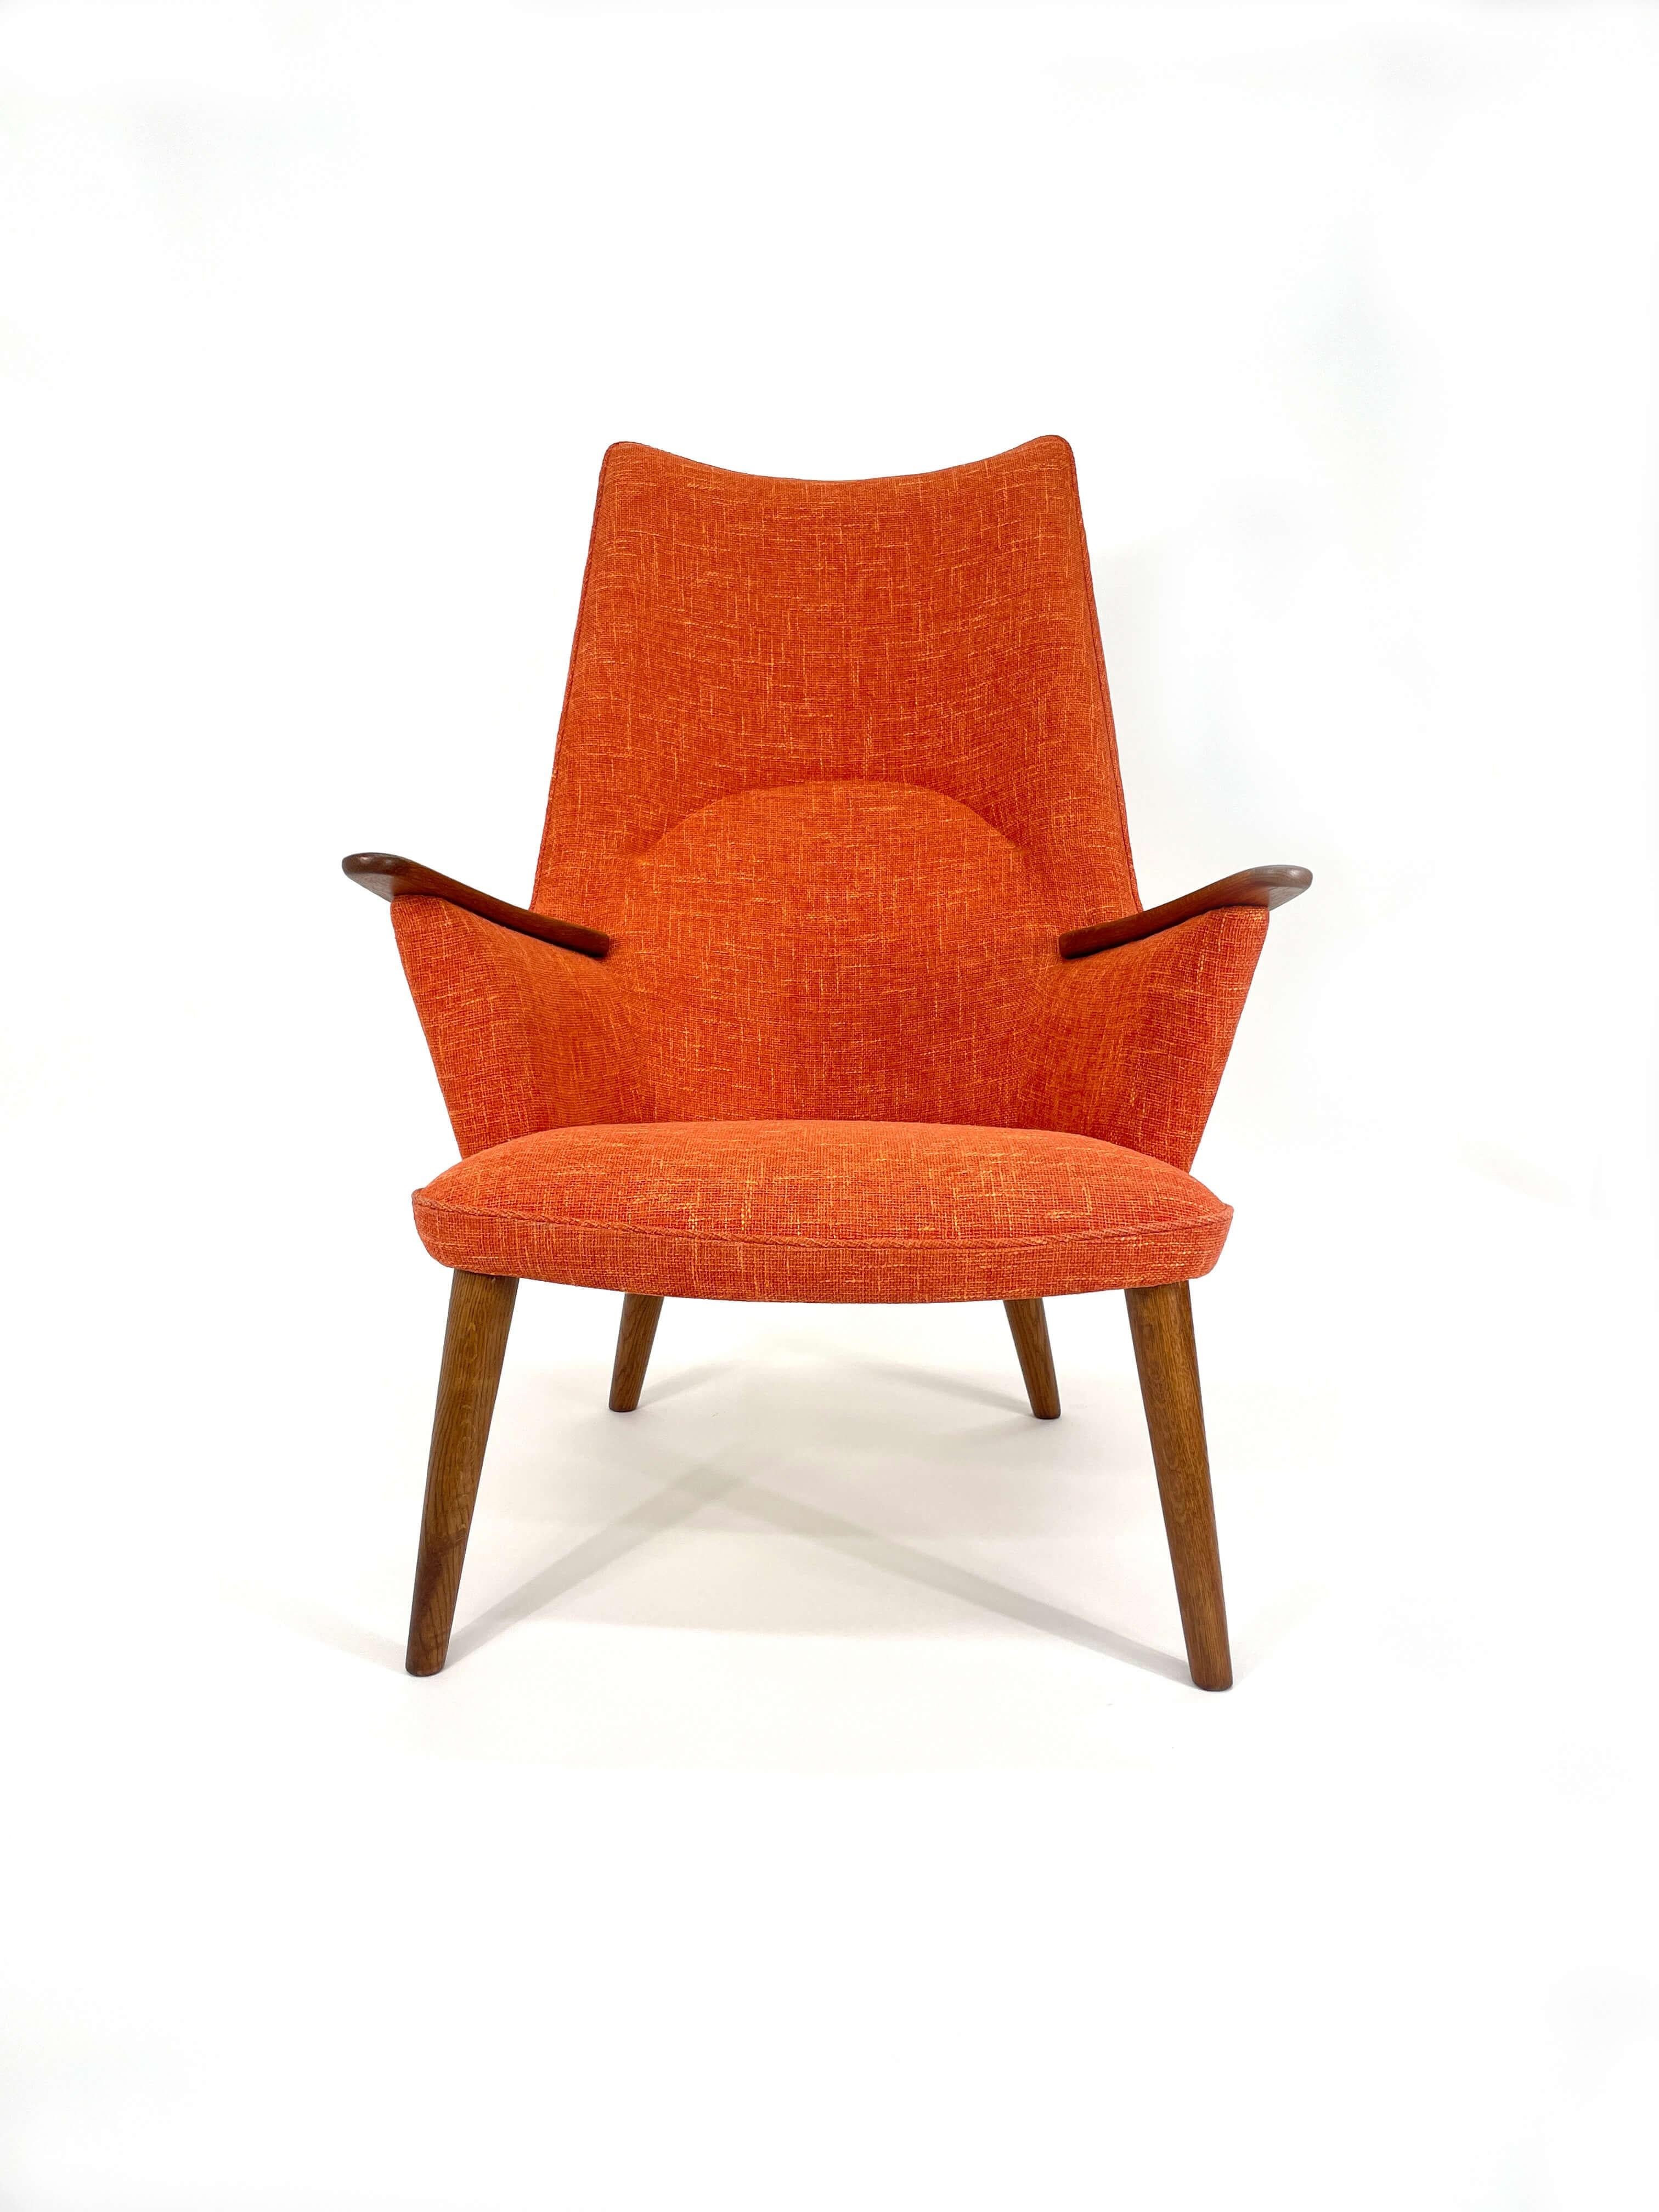 L'AP-27, également connue sous le nom de chaise Mama Bear, a été conçue par Hans Wegner en 1957. Cette chaise emblématique possède un dossier haut et des pattes en bois de chêne ainsi que des accoudoirs magnifiquement sculptés. Comme toutes les